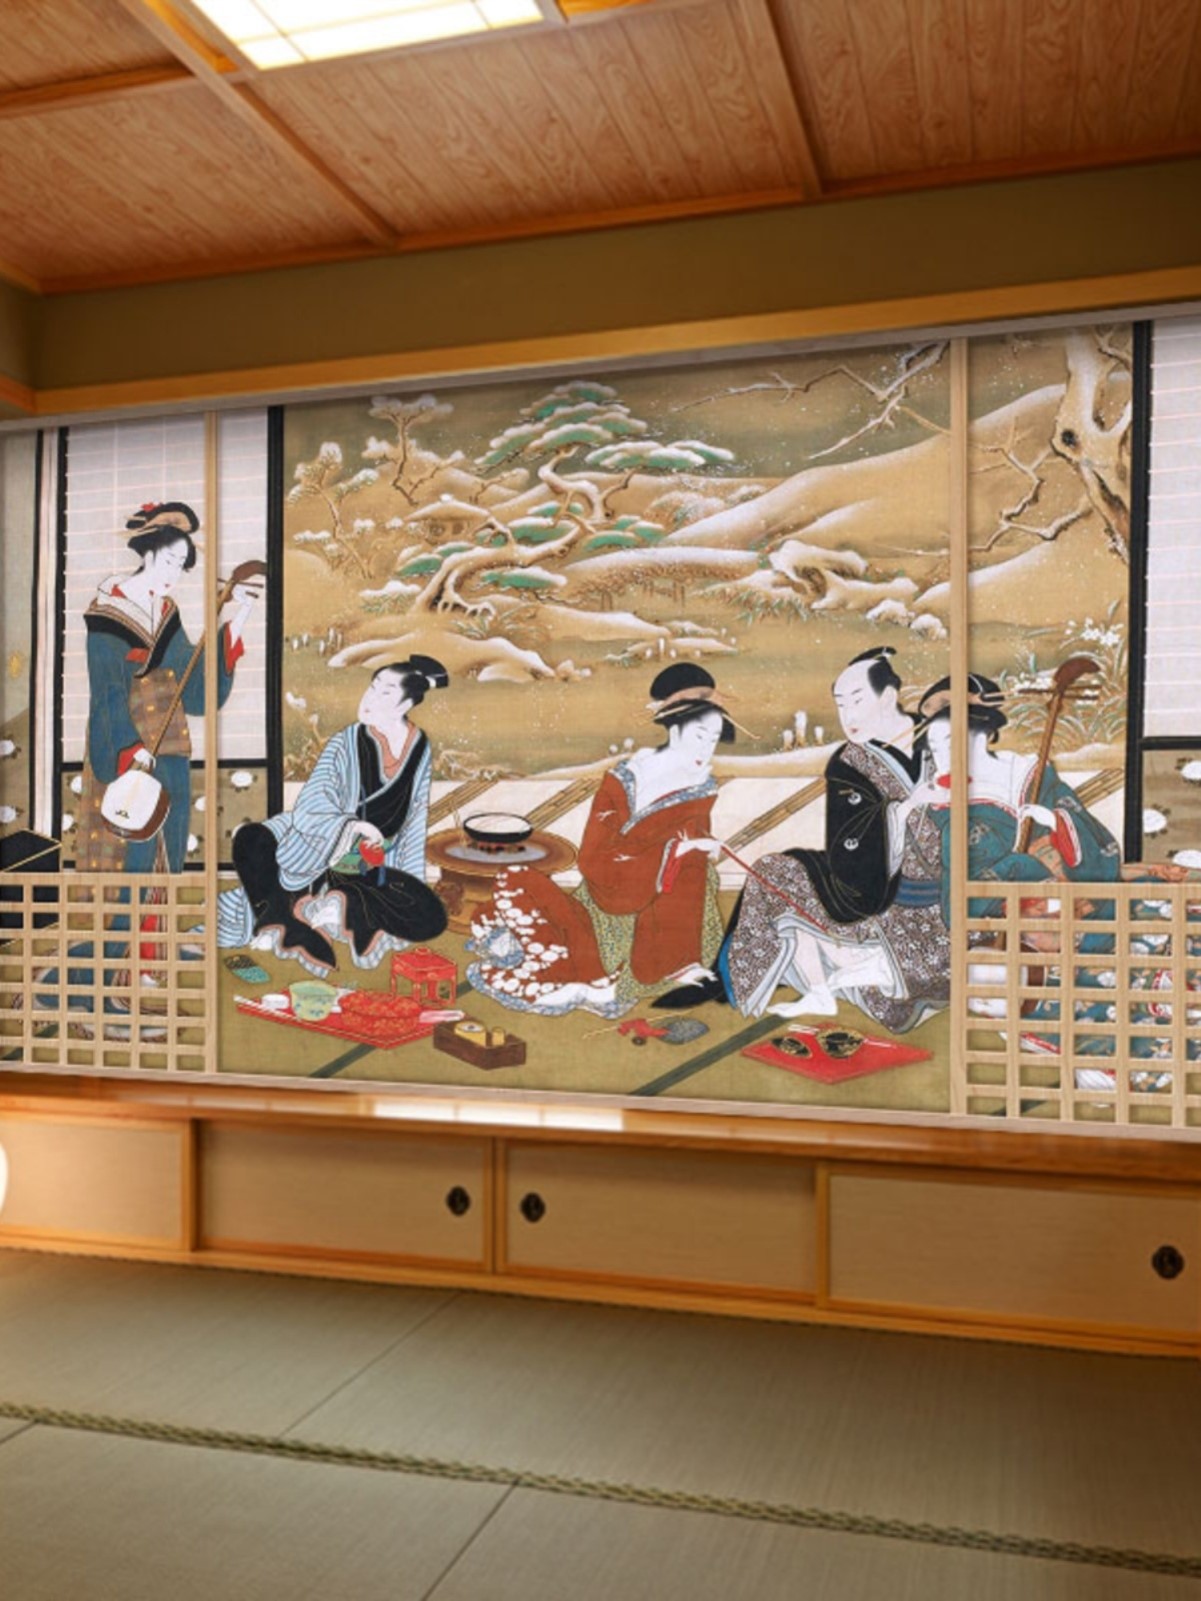 日式风格墙布日本寿司店浮世绘和风壁纸仕女图壁画居酒屋装修墙纸